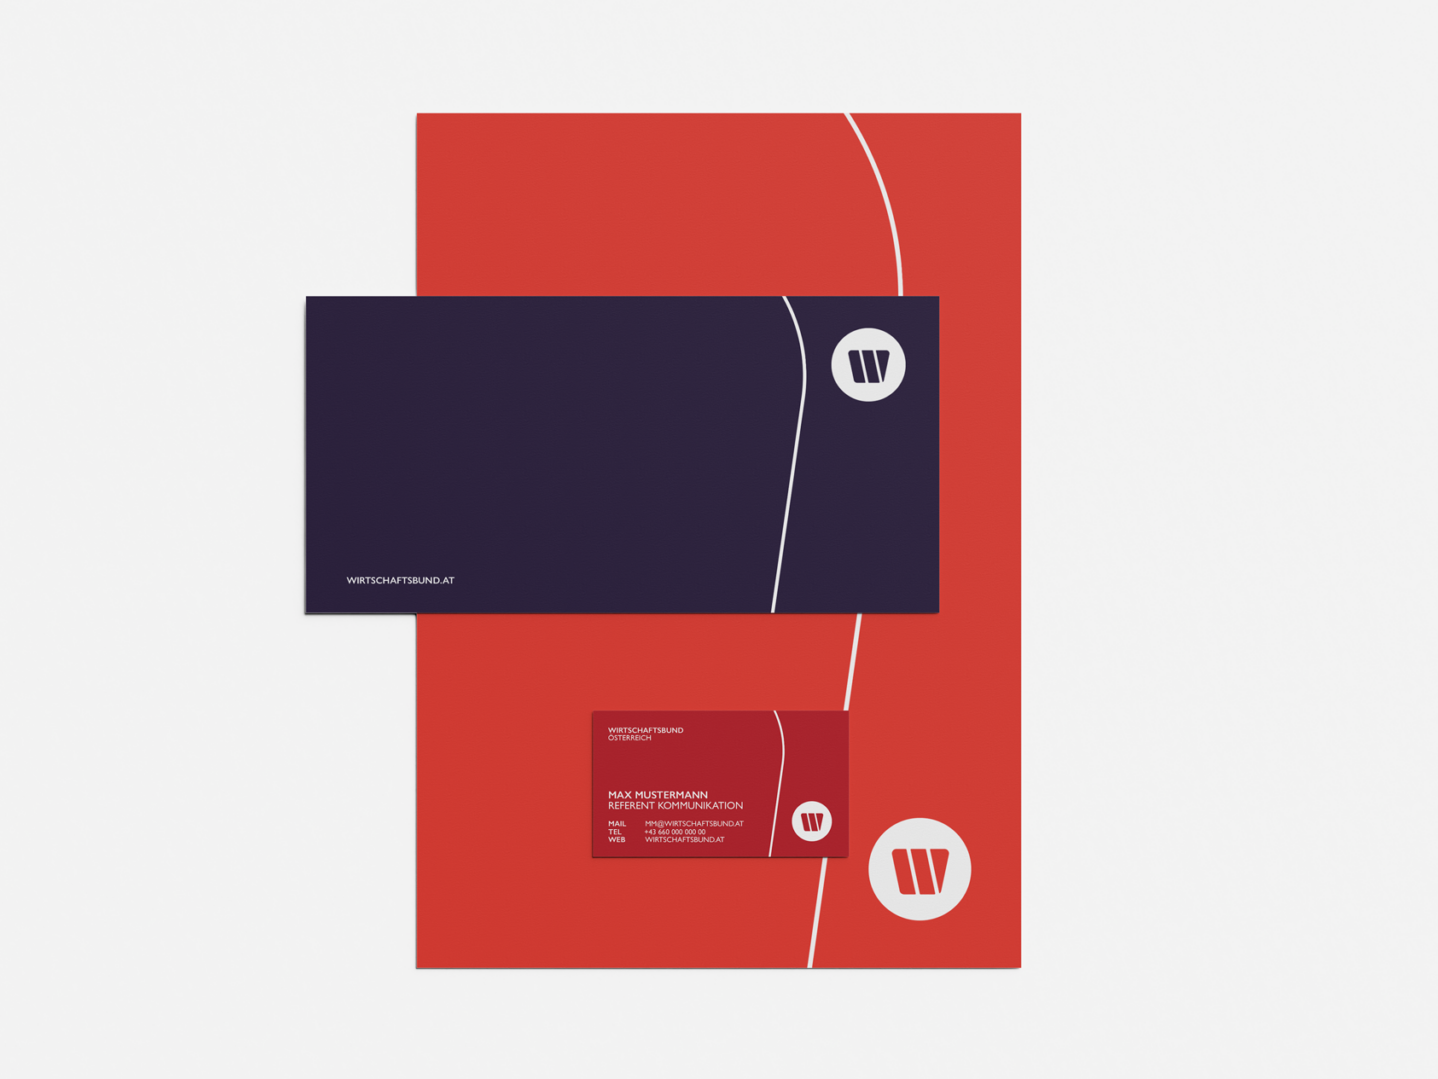 Wirtschaftsbund Geschaeftsmaterial bestehend aus Briefpapier, Karte und Visitenkarte in den Farben Orange, Violett und Rot inklusive Logo und Key-Visual.